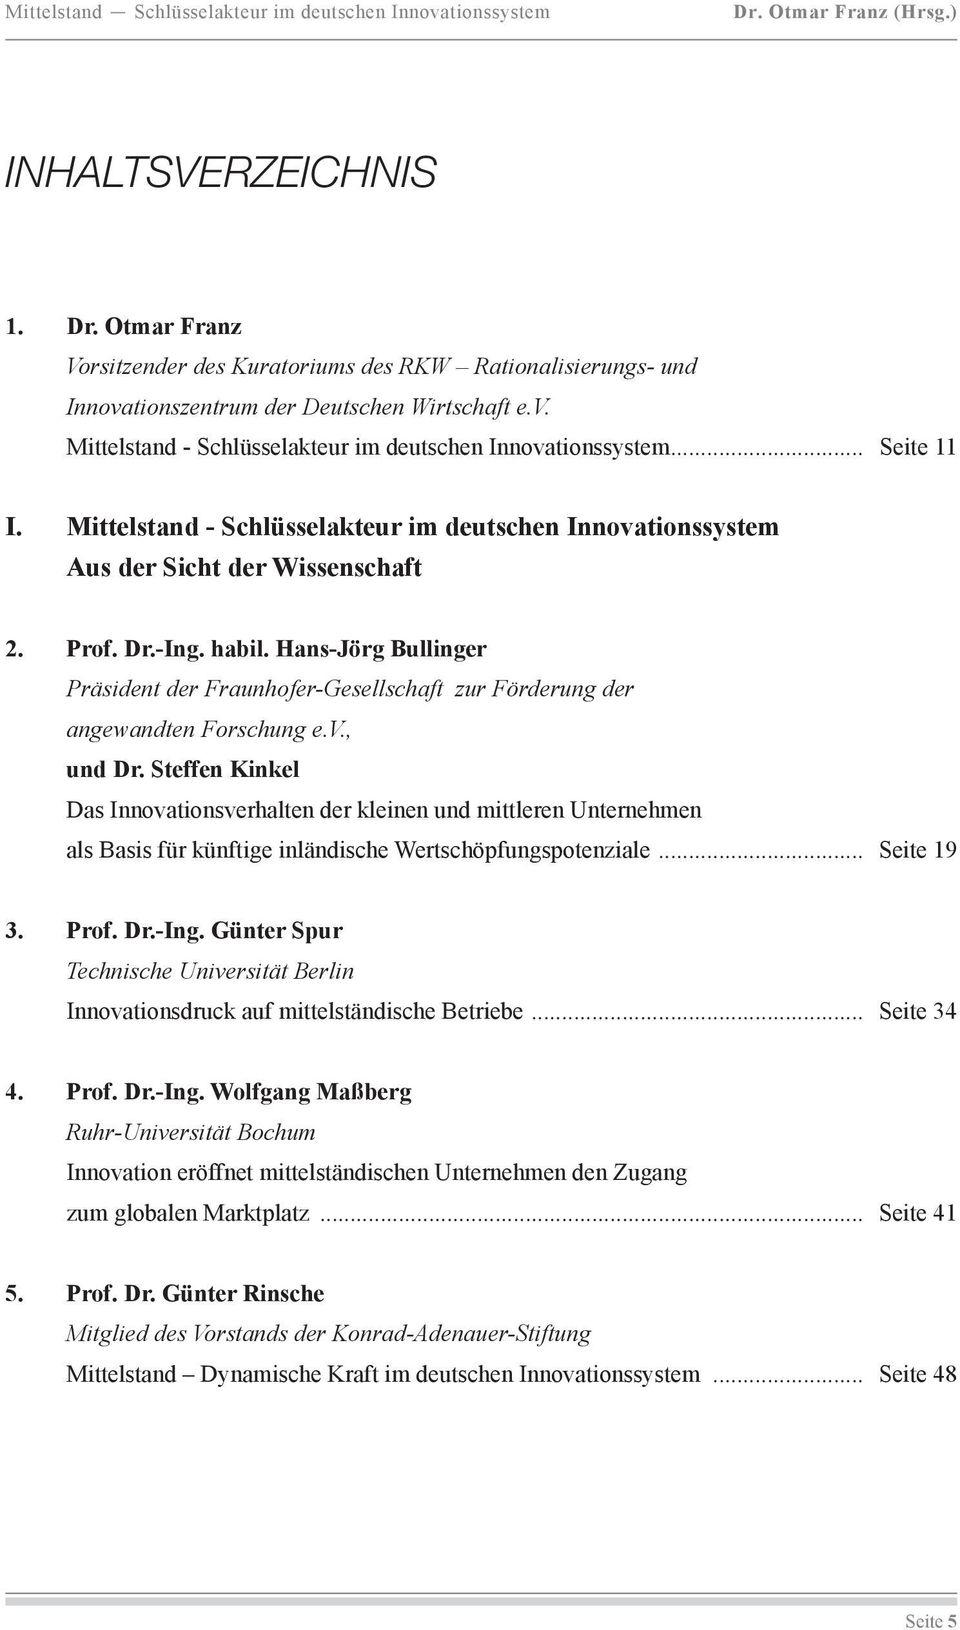 Hans-Jörg Bullinger Präsident der Fraunhofer-Gesellschaft zur Förderung der angewandten Forschung e.v., und Dr.